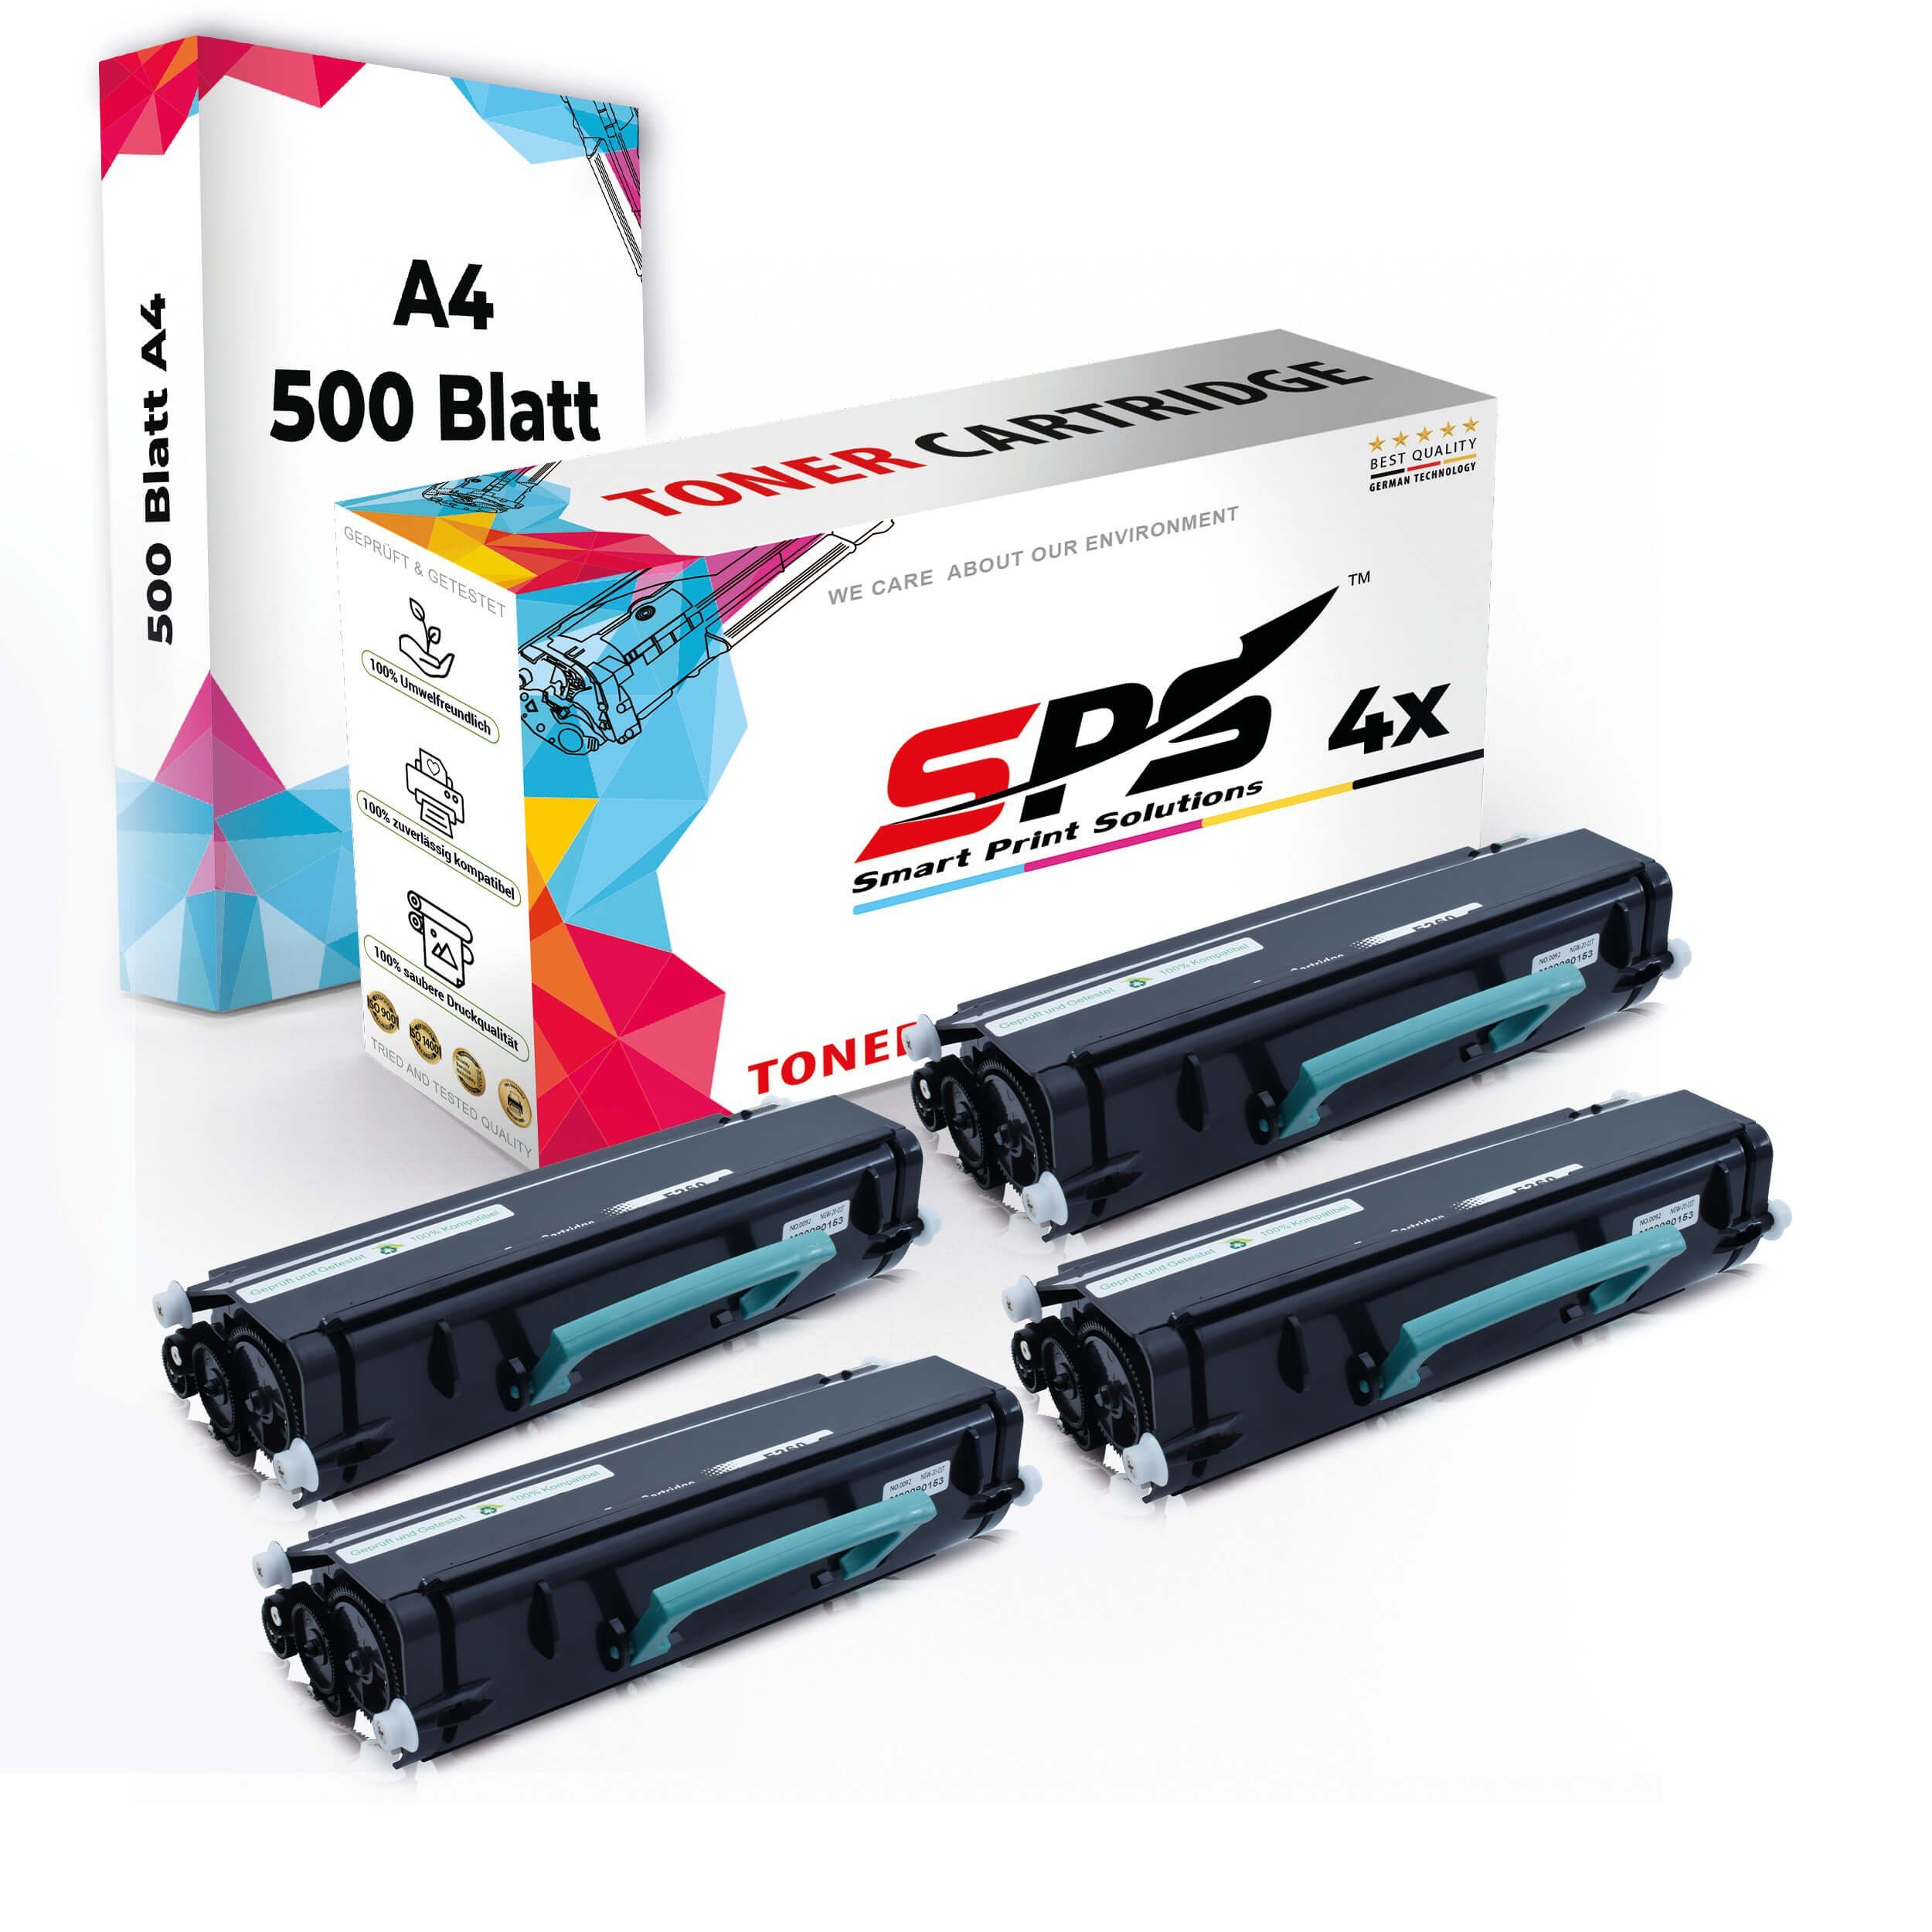 4x A4 4x Pack, SPS Druckerpapier Multipack A4 + (4er Toner,1x Kompatibel, Druckerpapier) Tonerkartusche Set